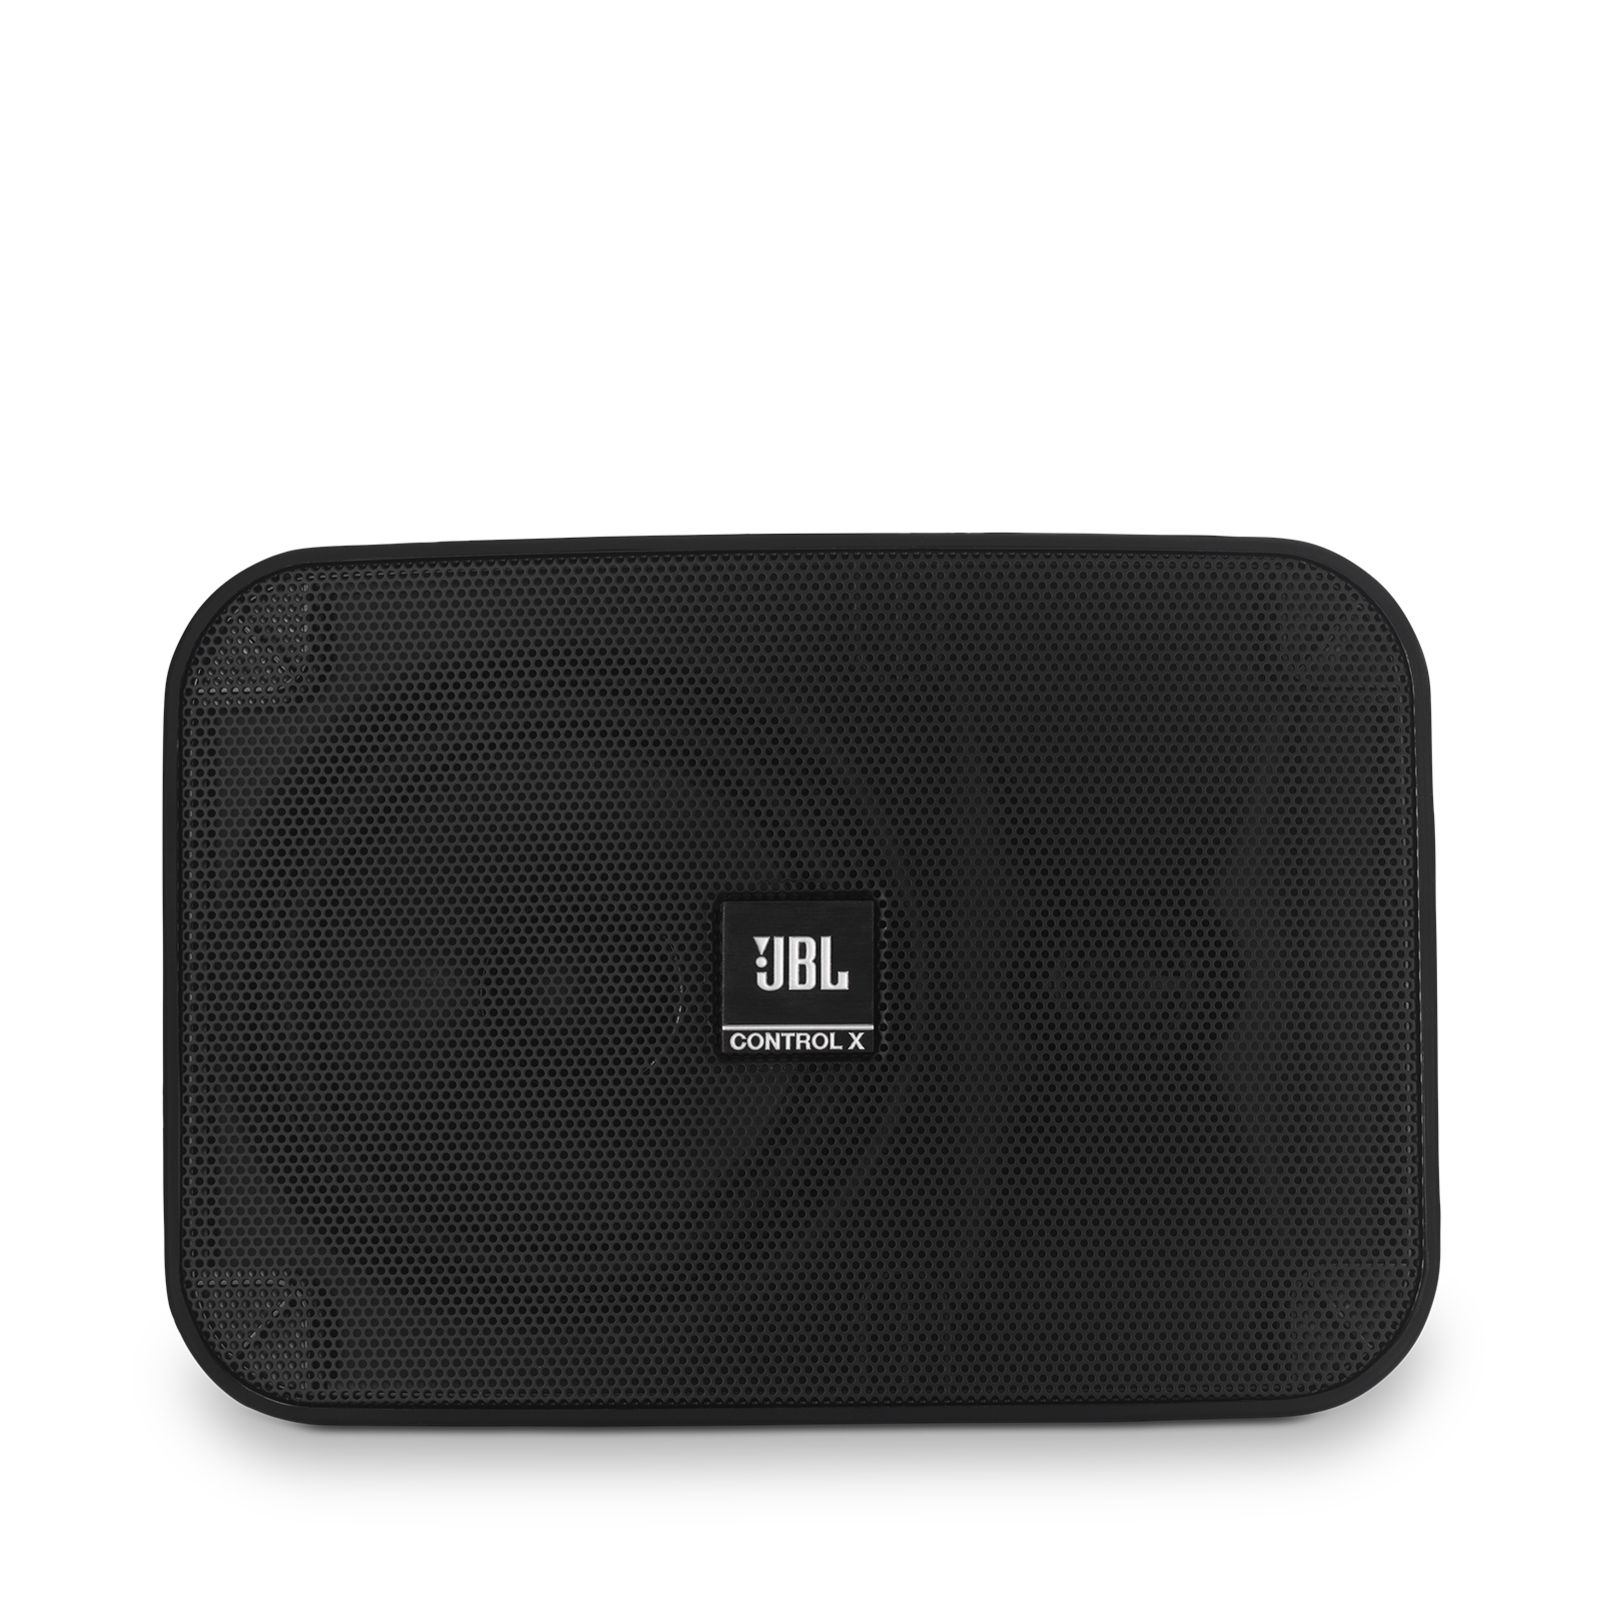 JBL Control X - Black - 5.25” (133mm) Indoor / Outdoor Speakers - Detailshot 2